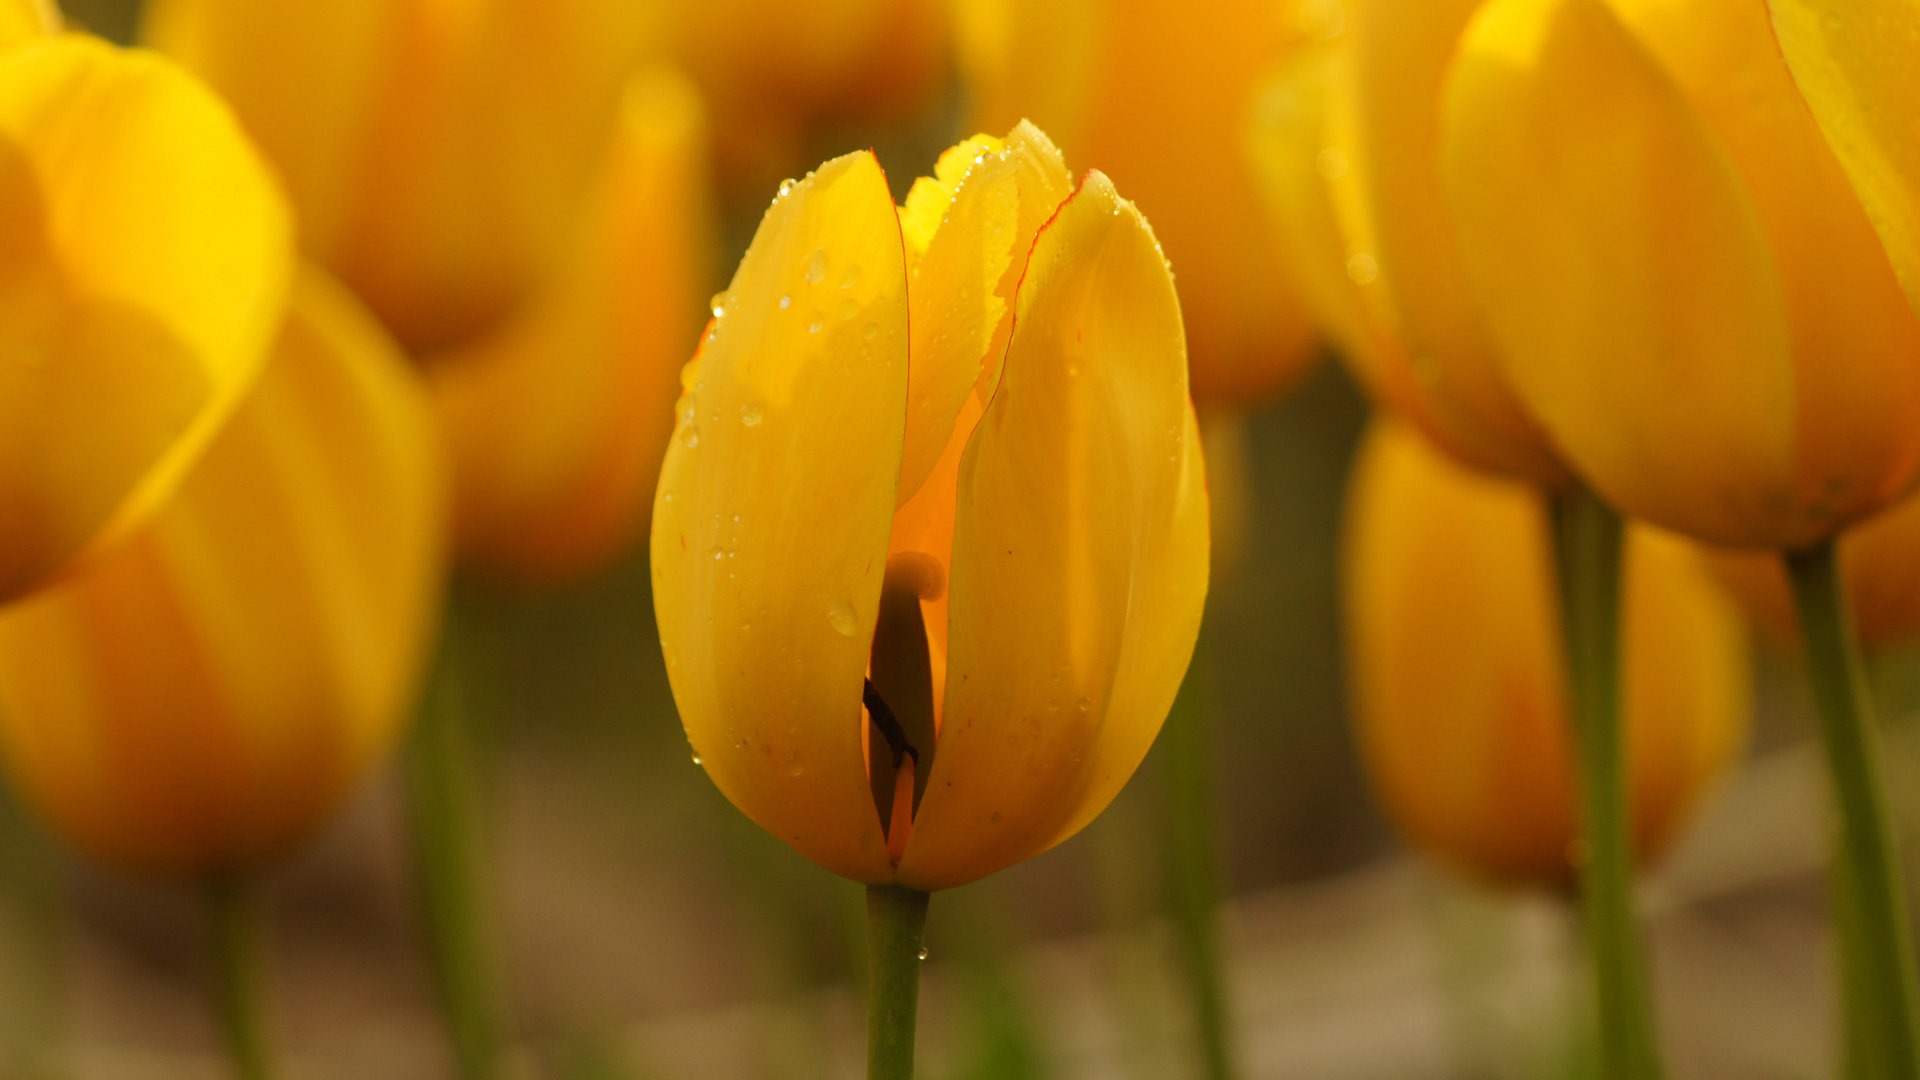 Fondos de pantalla HD de flores tulipanes frescos y coloridos #10 - 1920x1080